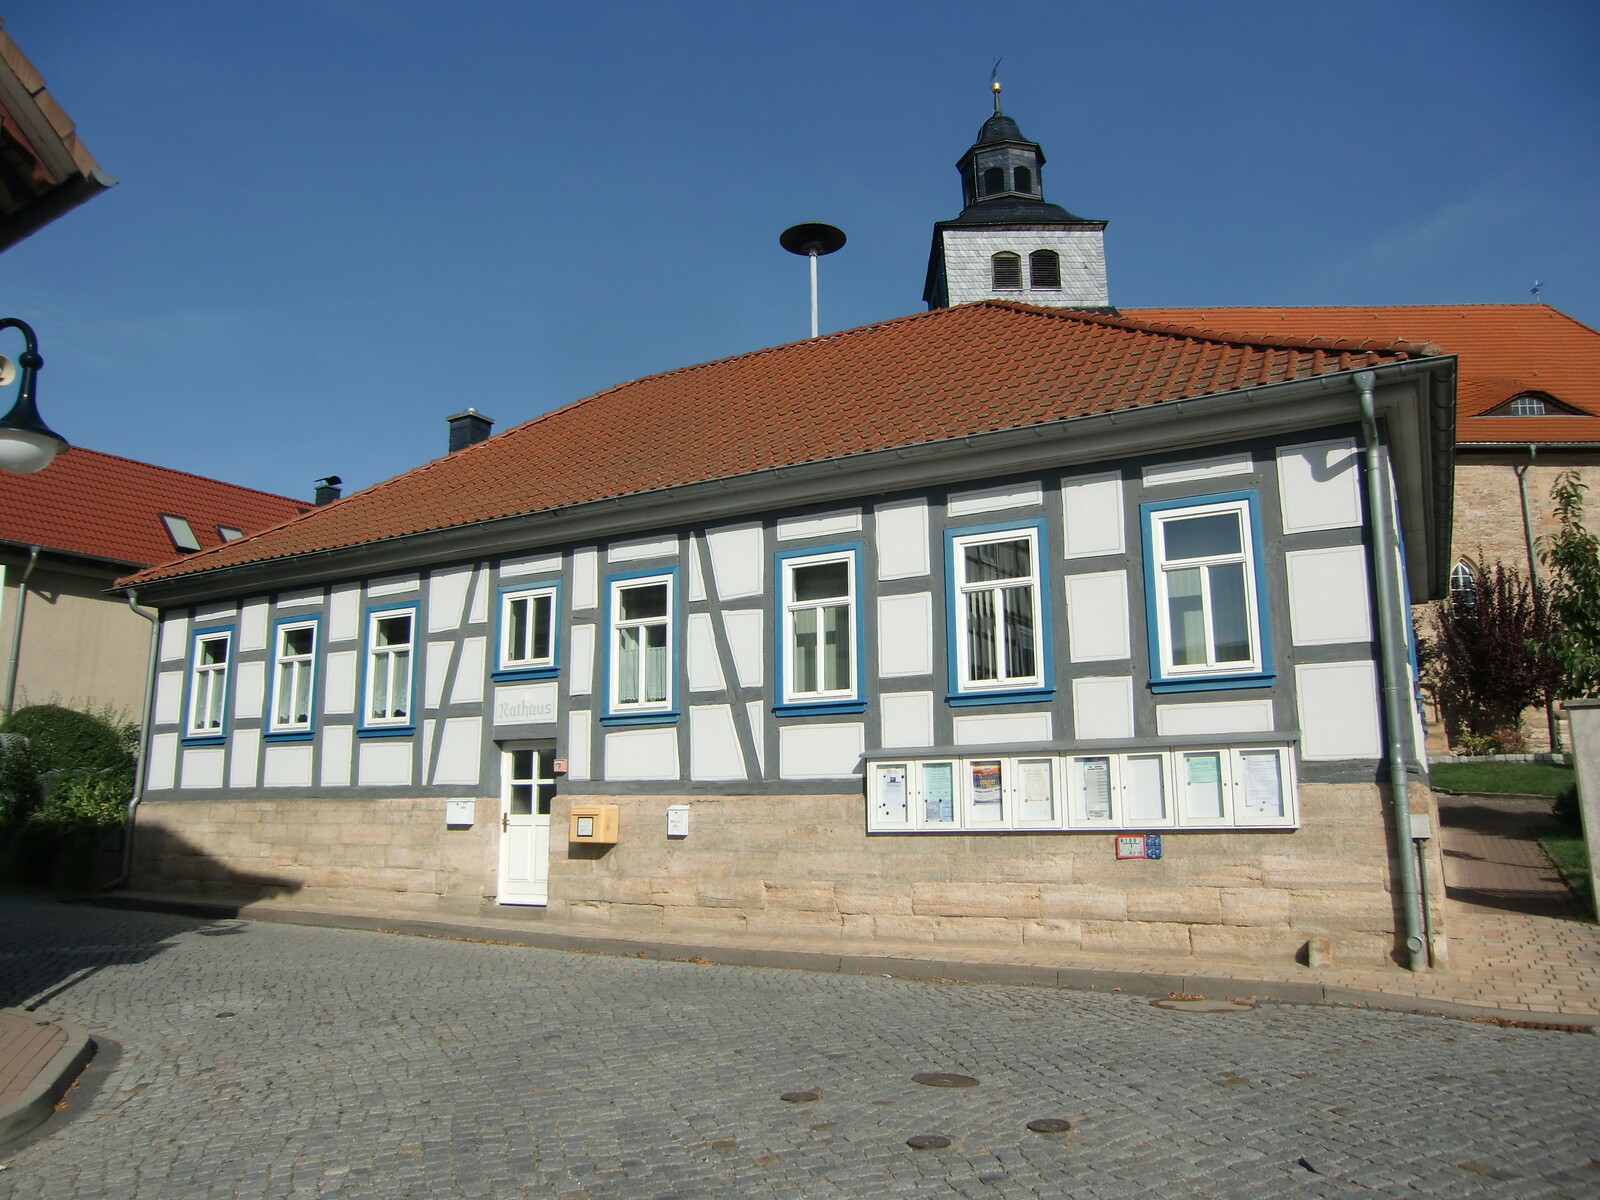 Rathaus Ifta, ProjektStadt